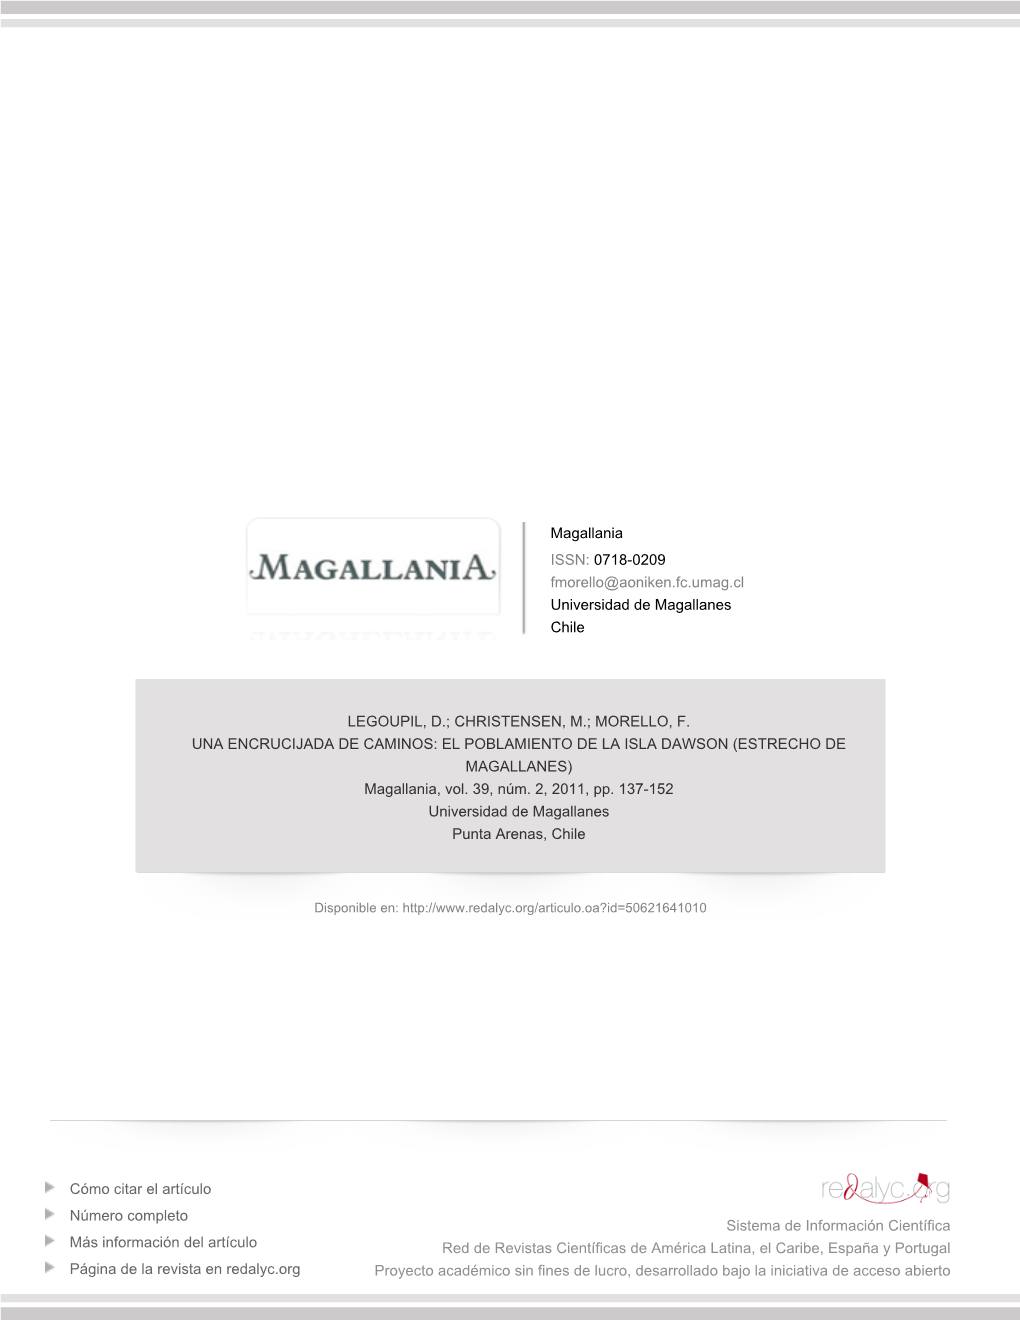 UNA ENCRUCIJADA DE CAMINOS: EL POBLAMIENTO DE LA ISLA DAWSON (ESTRECHO DE MAGALLANES) Magallania, Vol